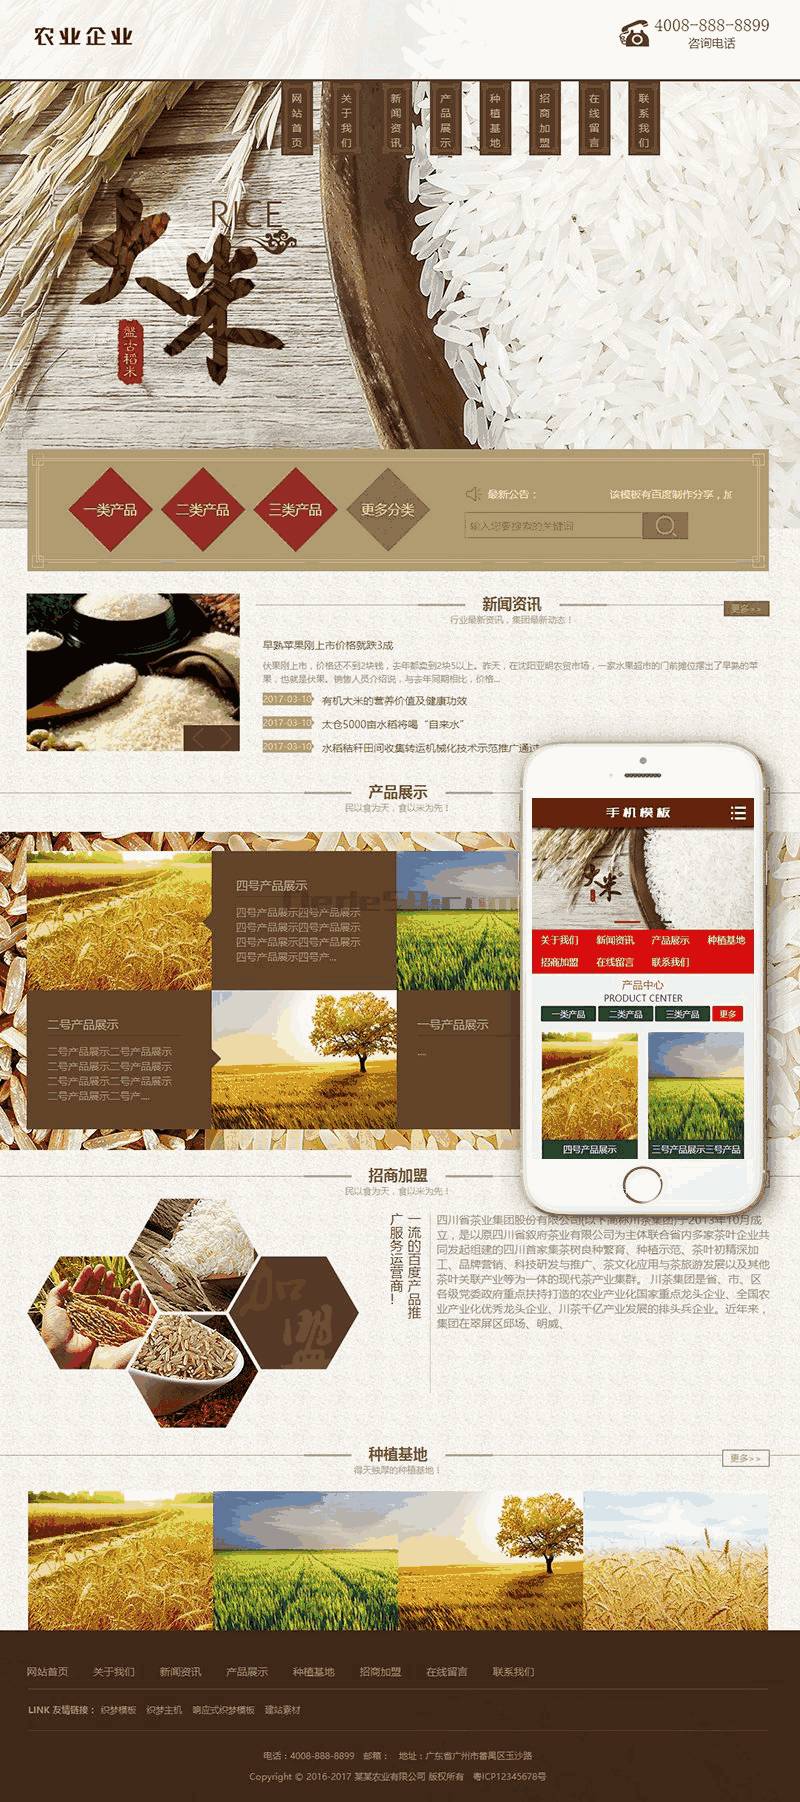 谷大米农作作物农作物农业Wordpress模板主题